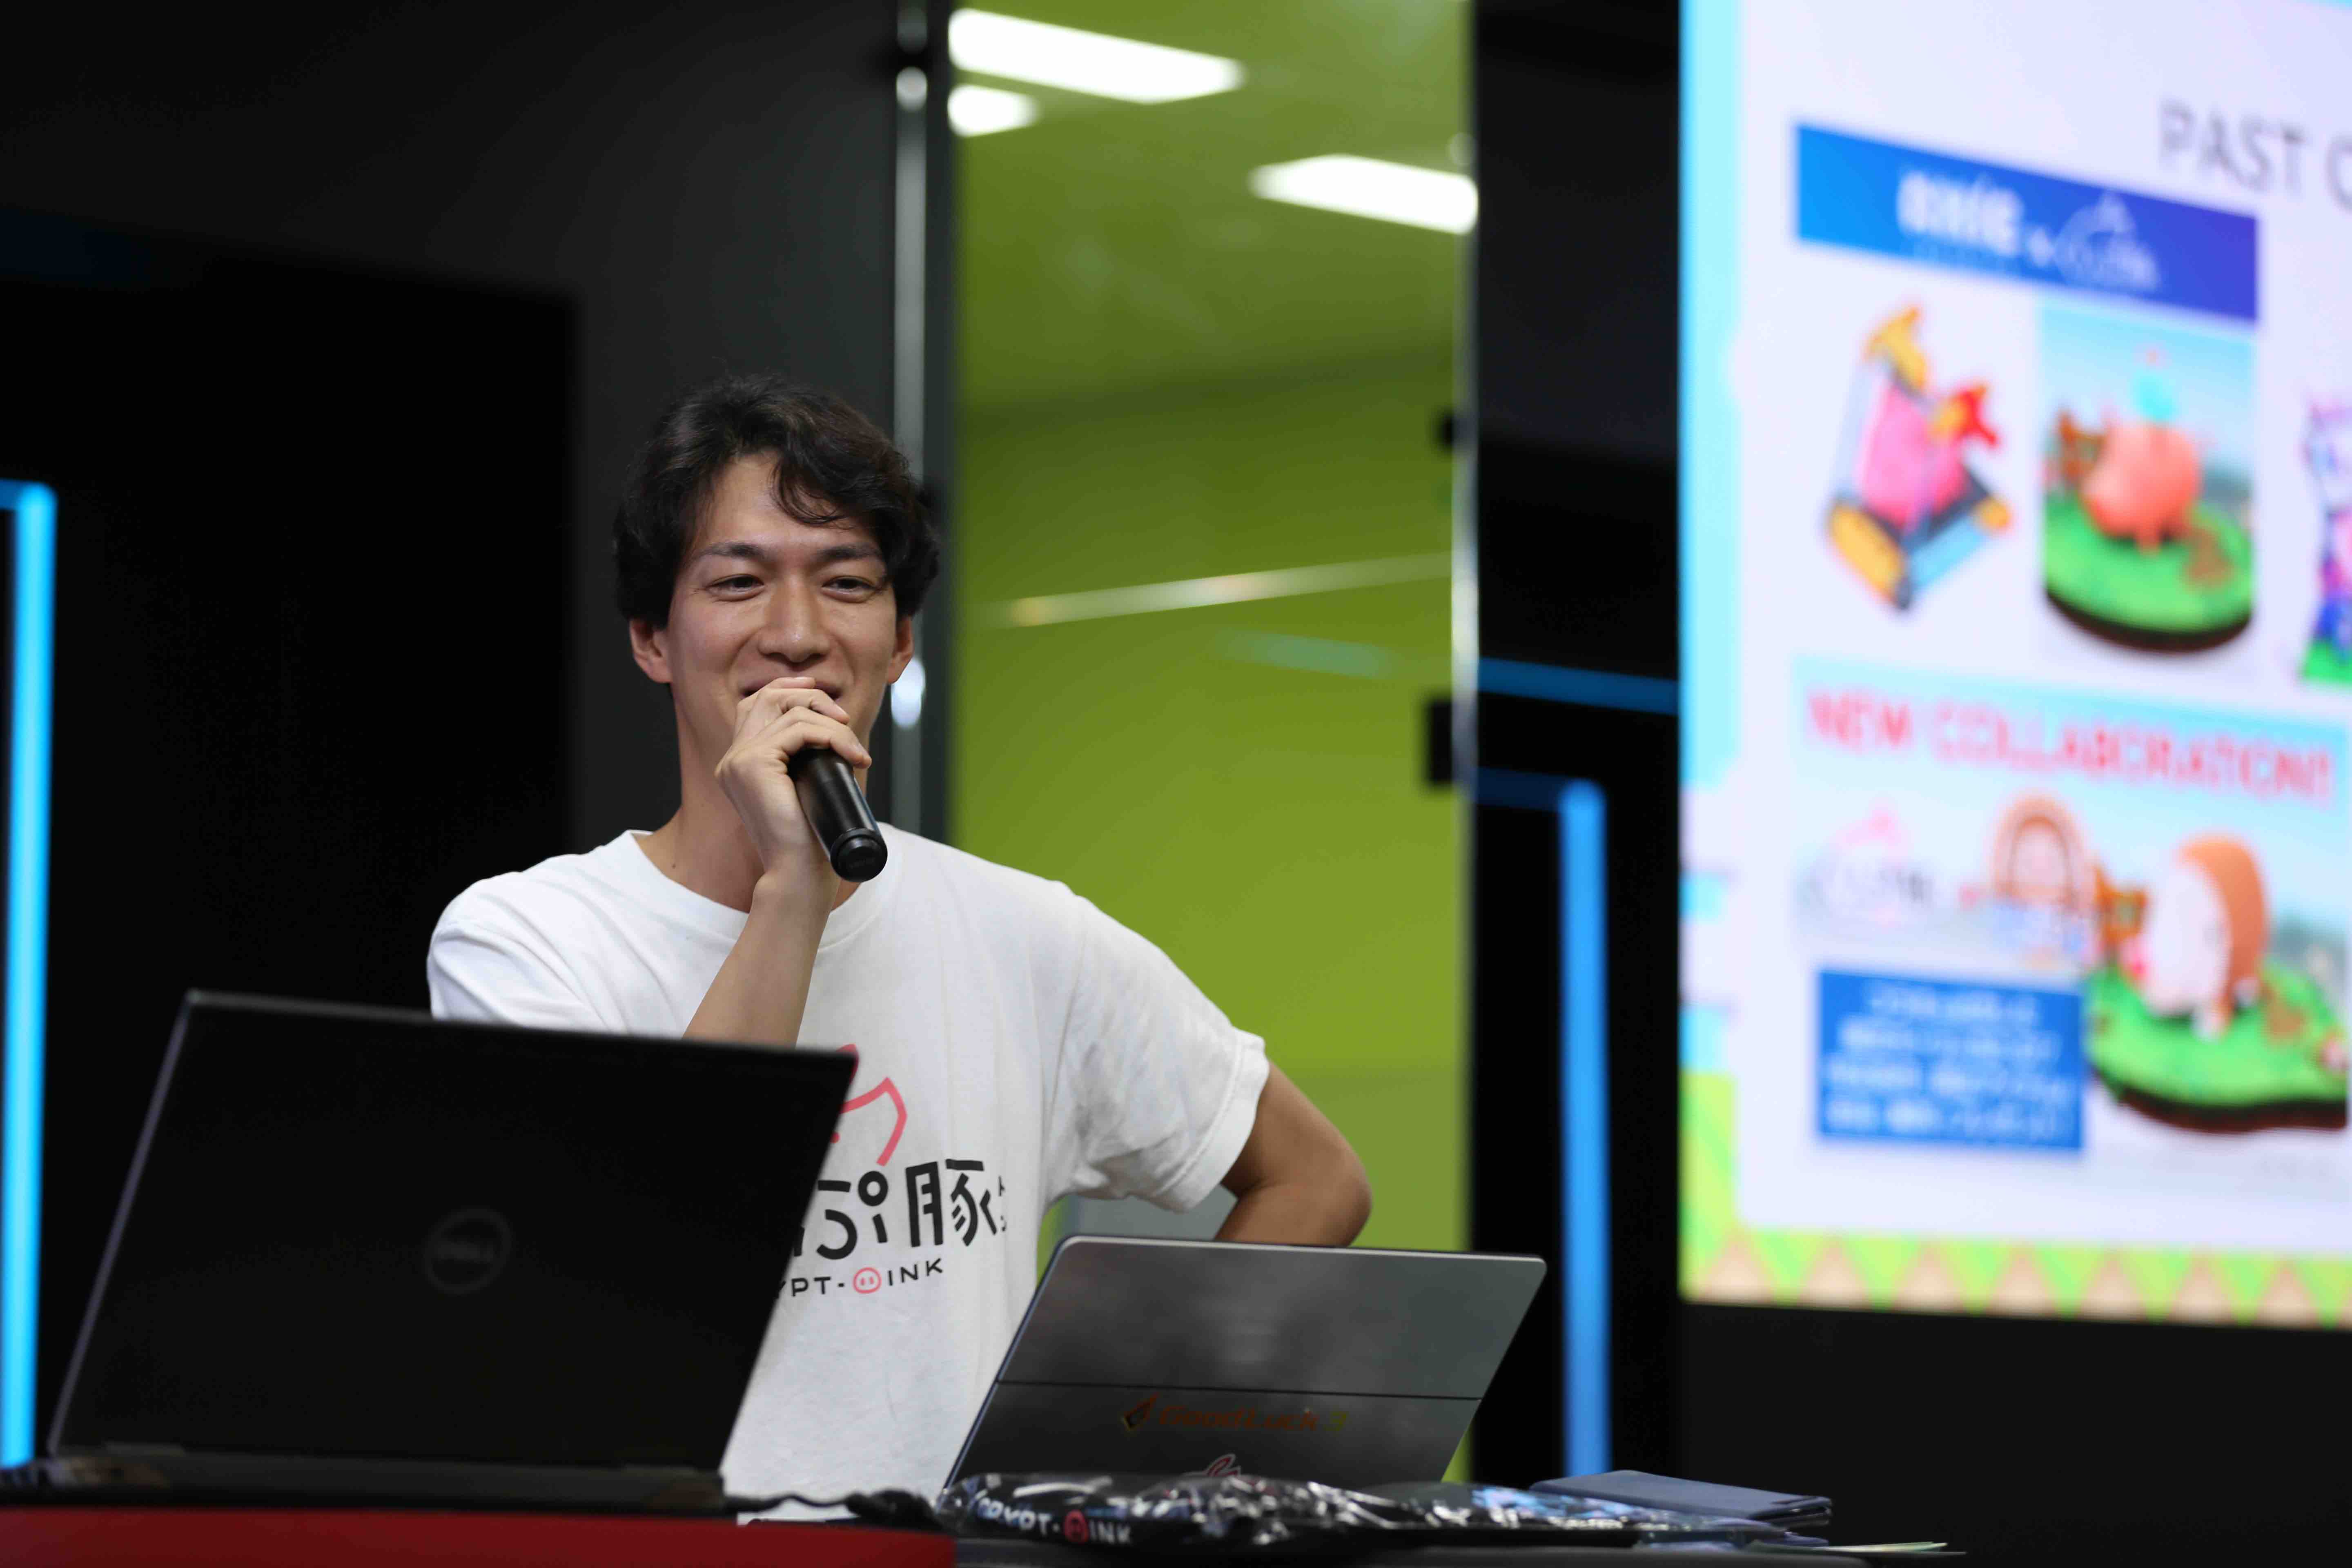 【TBGC2019レポート-後編】日本から世界へブロックチェーンゲームにフォーカスしたイベント「Tokyo BlockChain Game Conference2019」レポート